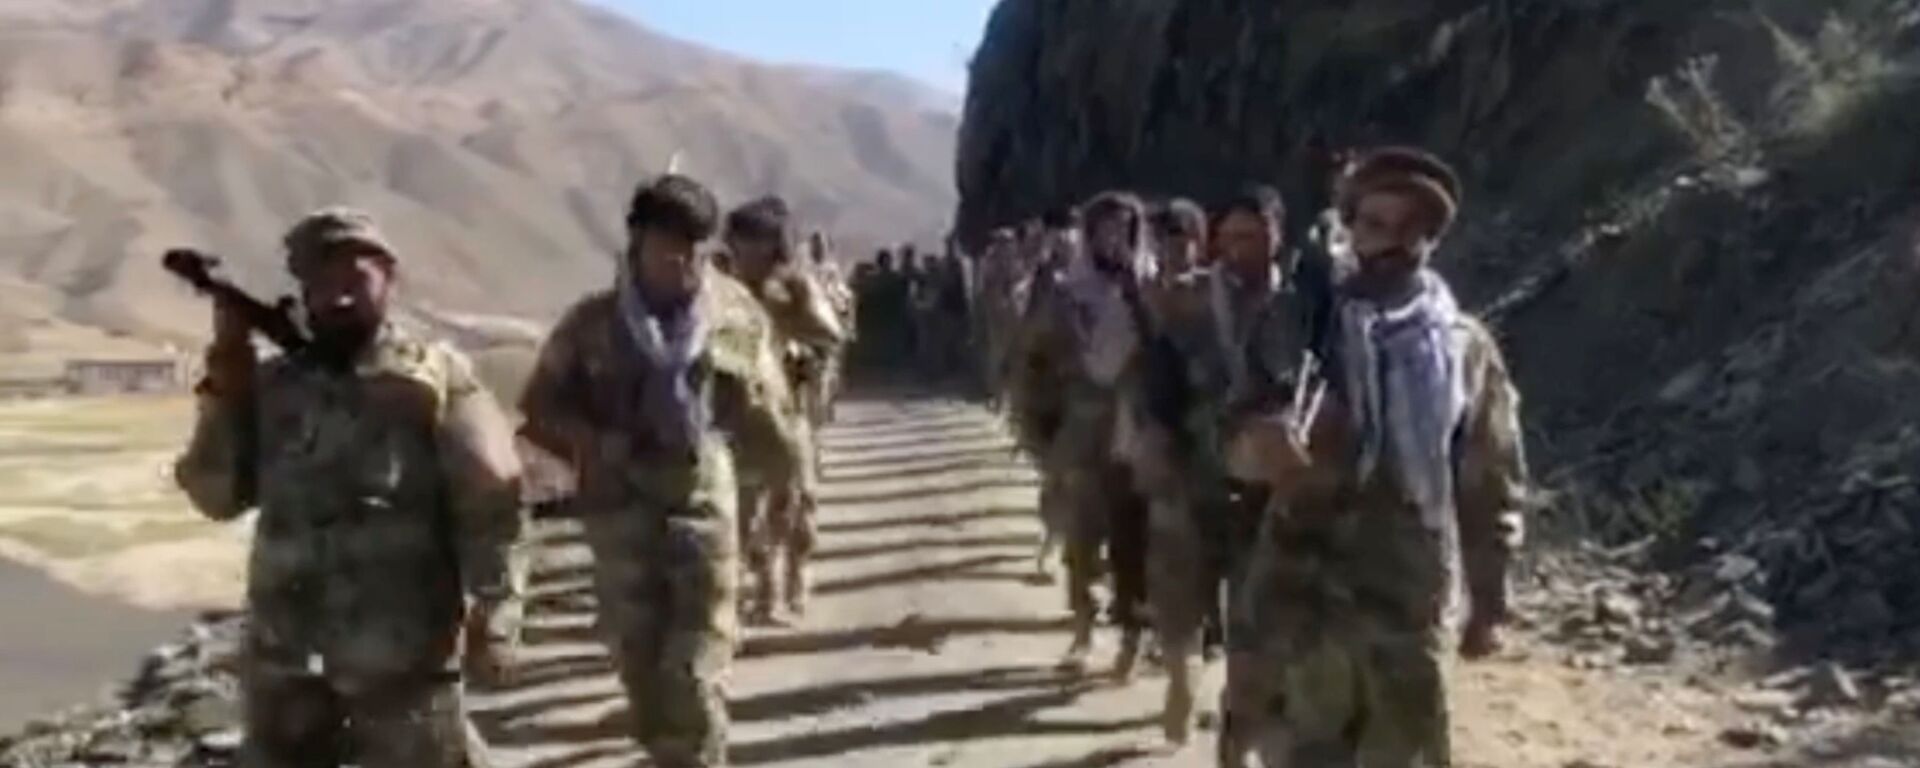 Anti-Taliban resistance troops walk in Panjshir Valley, Afghanistan August 25, 2021 in this still image taken from video - Sputnik International, 1920